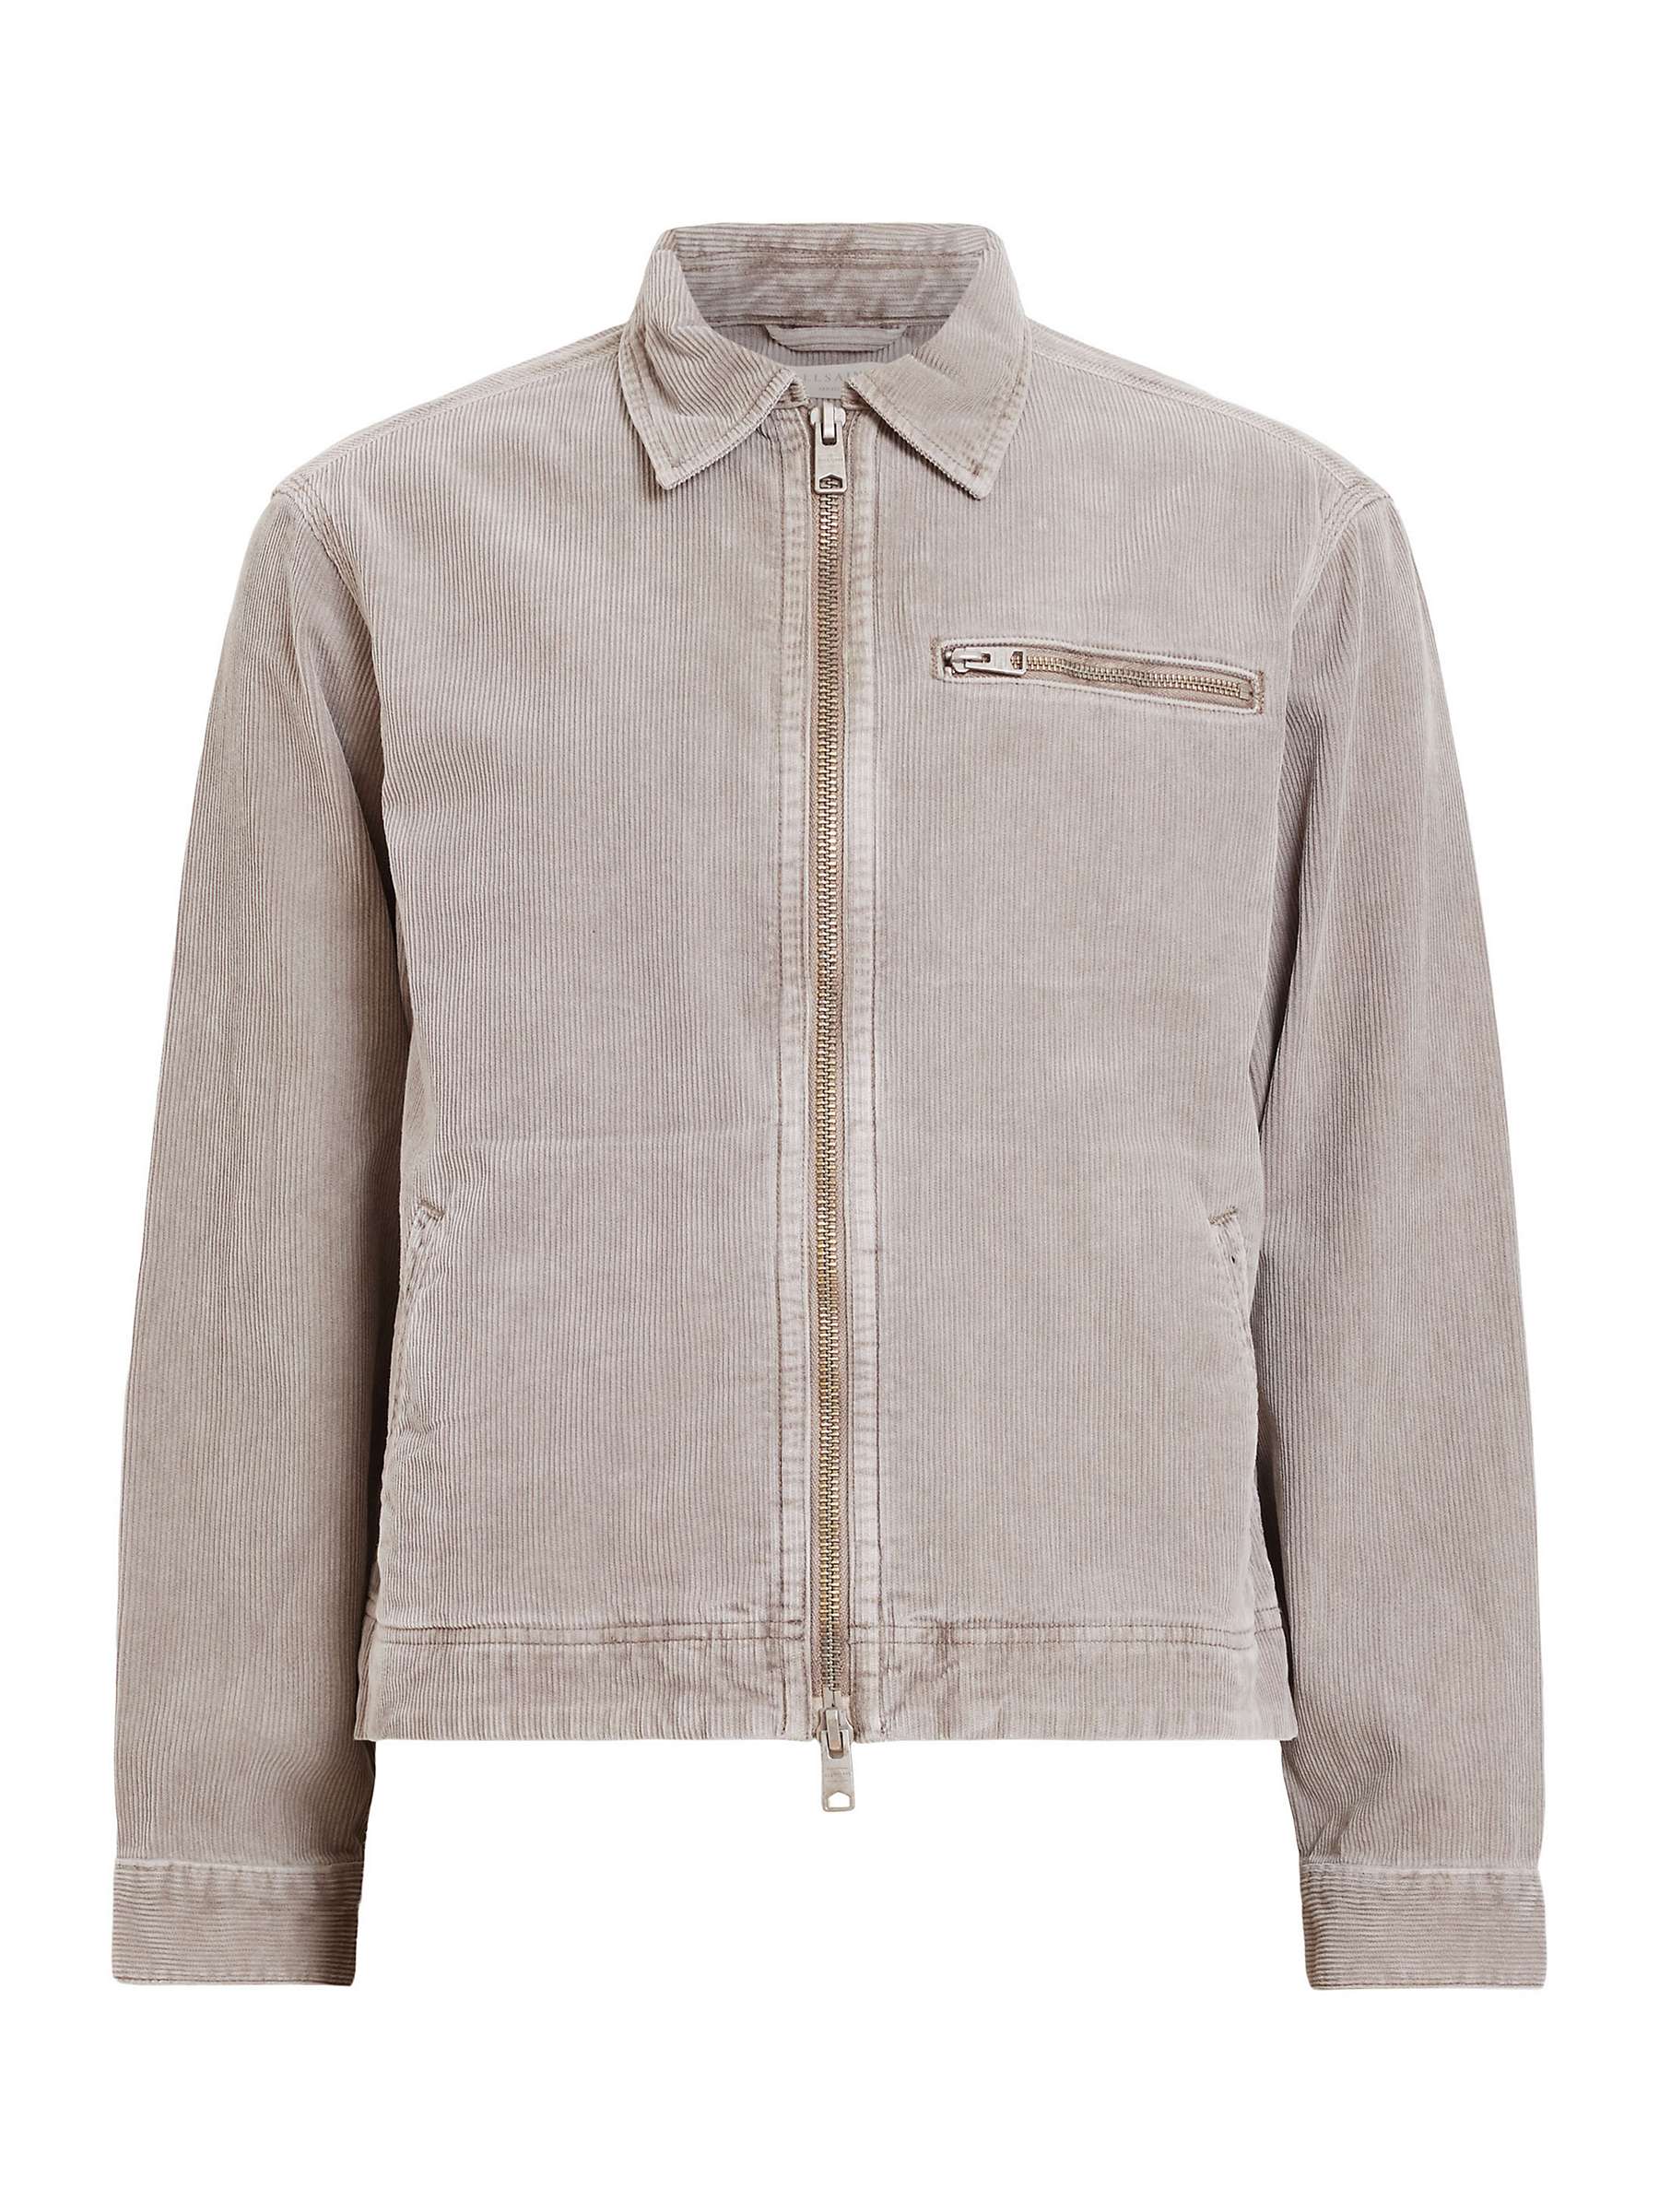 Buy AllSaints Kippax Jacket, Chestnut Taupe Online at johnlewis.com